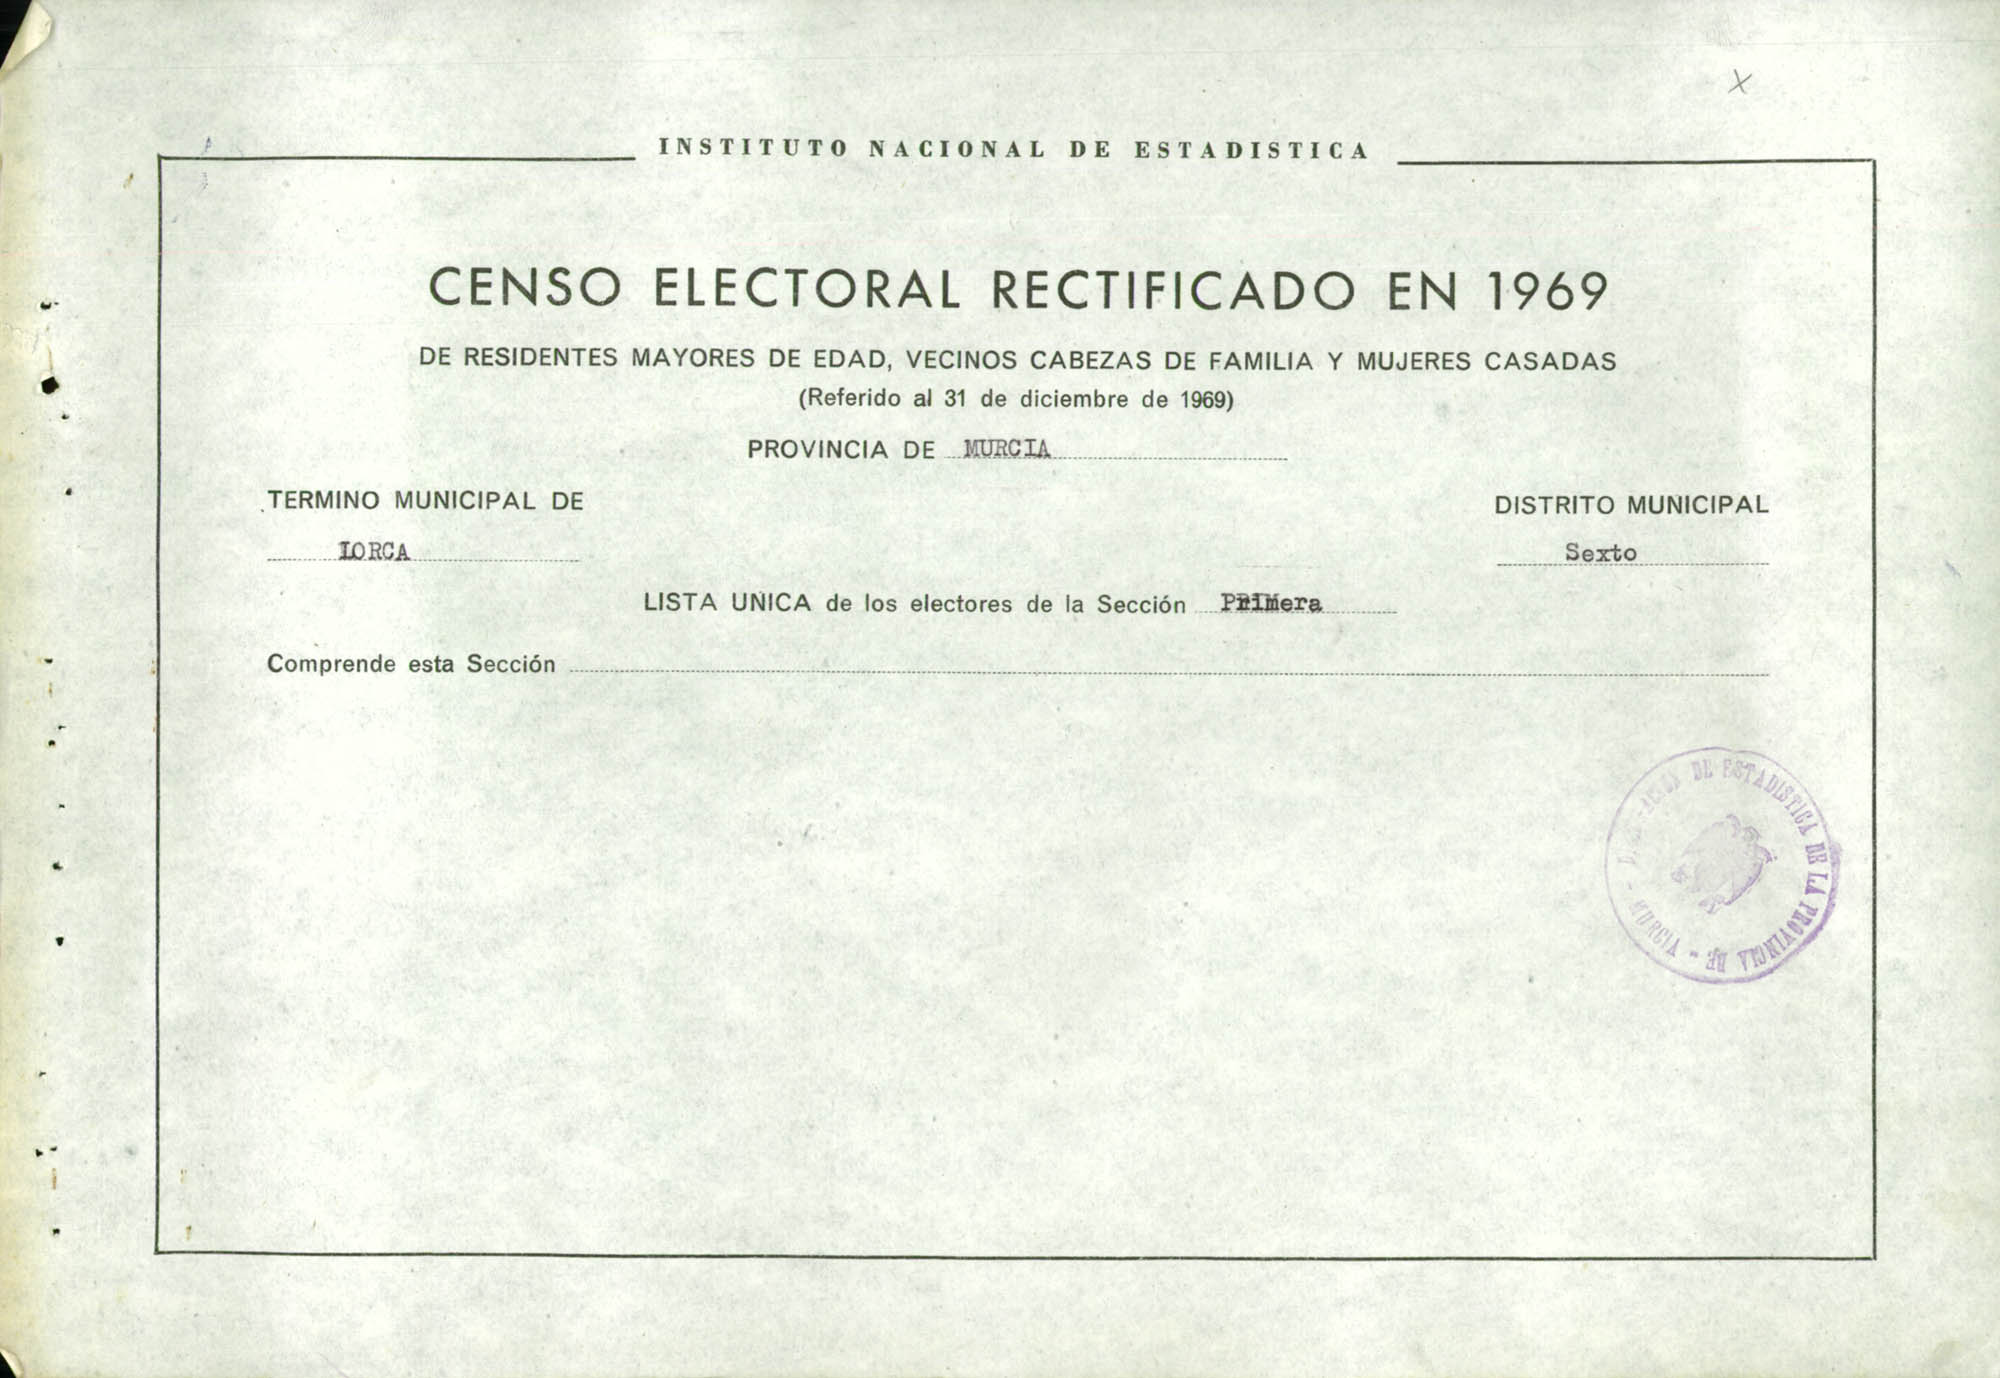 Censo electoral rectificado en 1969: listas definitivas de Lorca, Distrito 6º, sección 1ª.